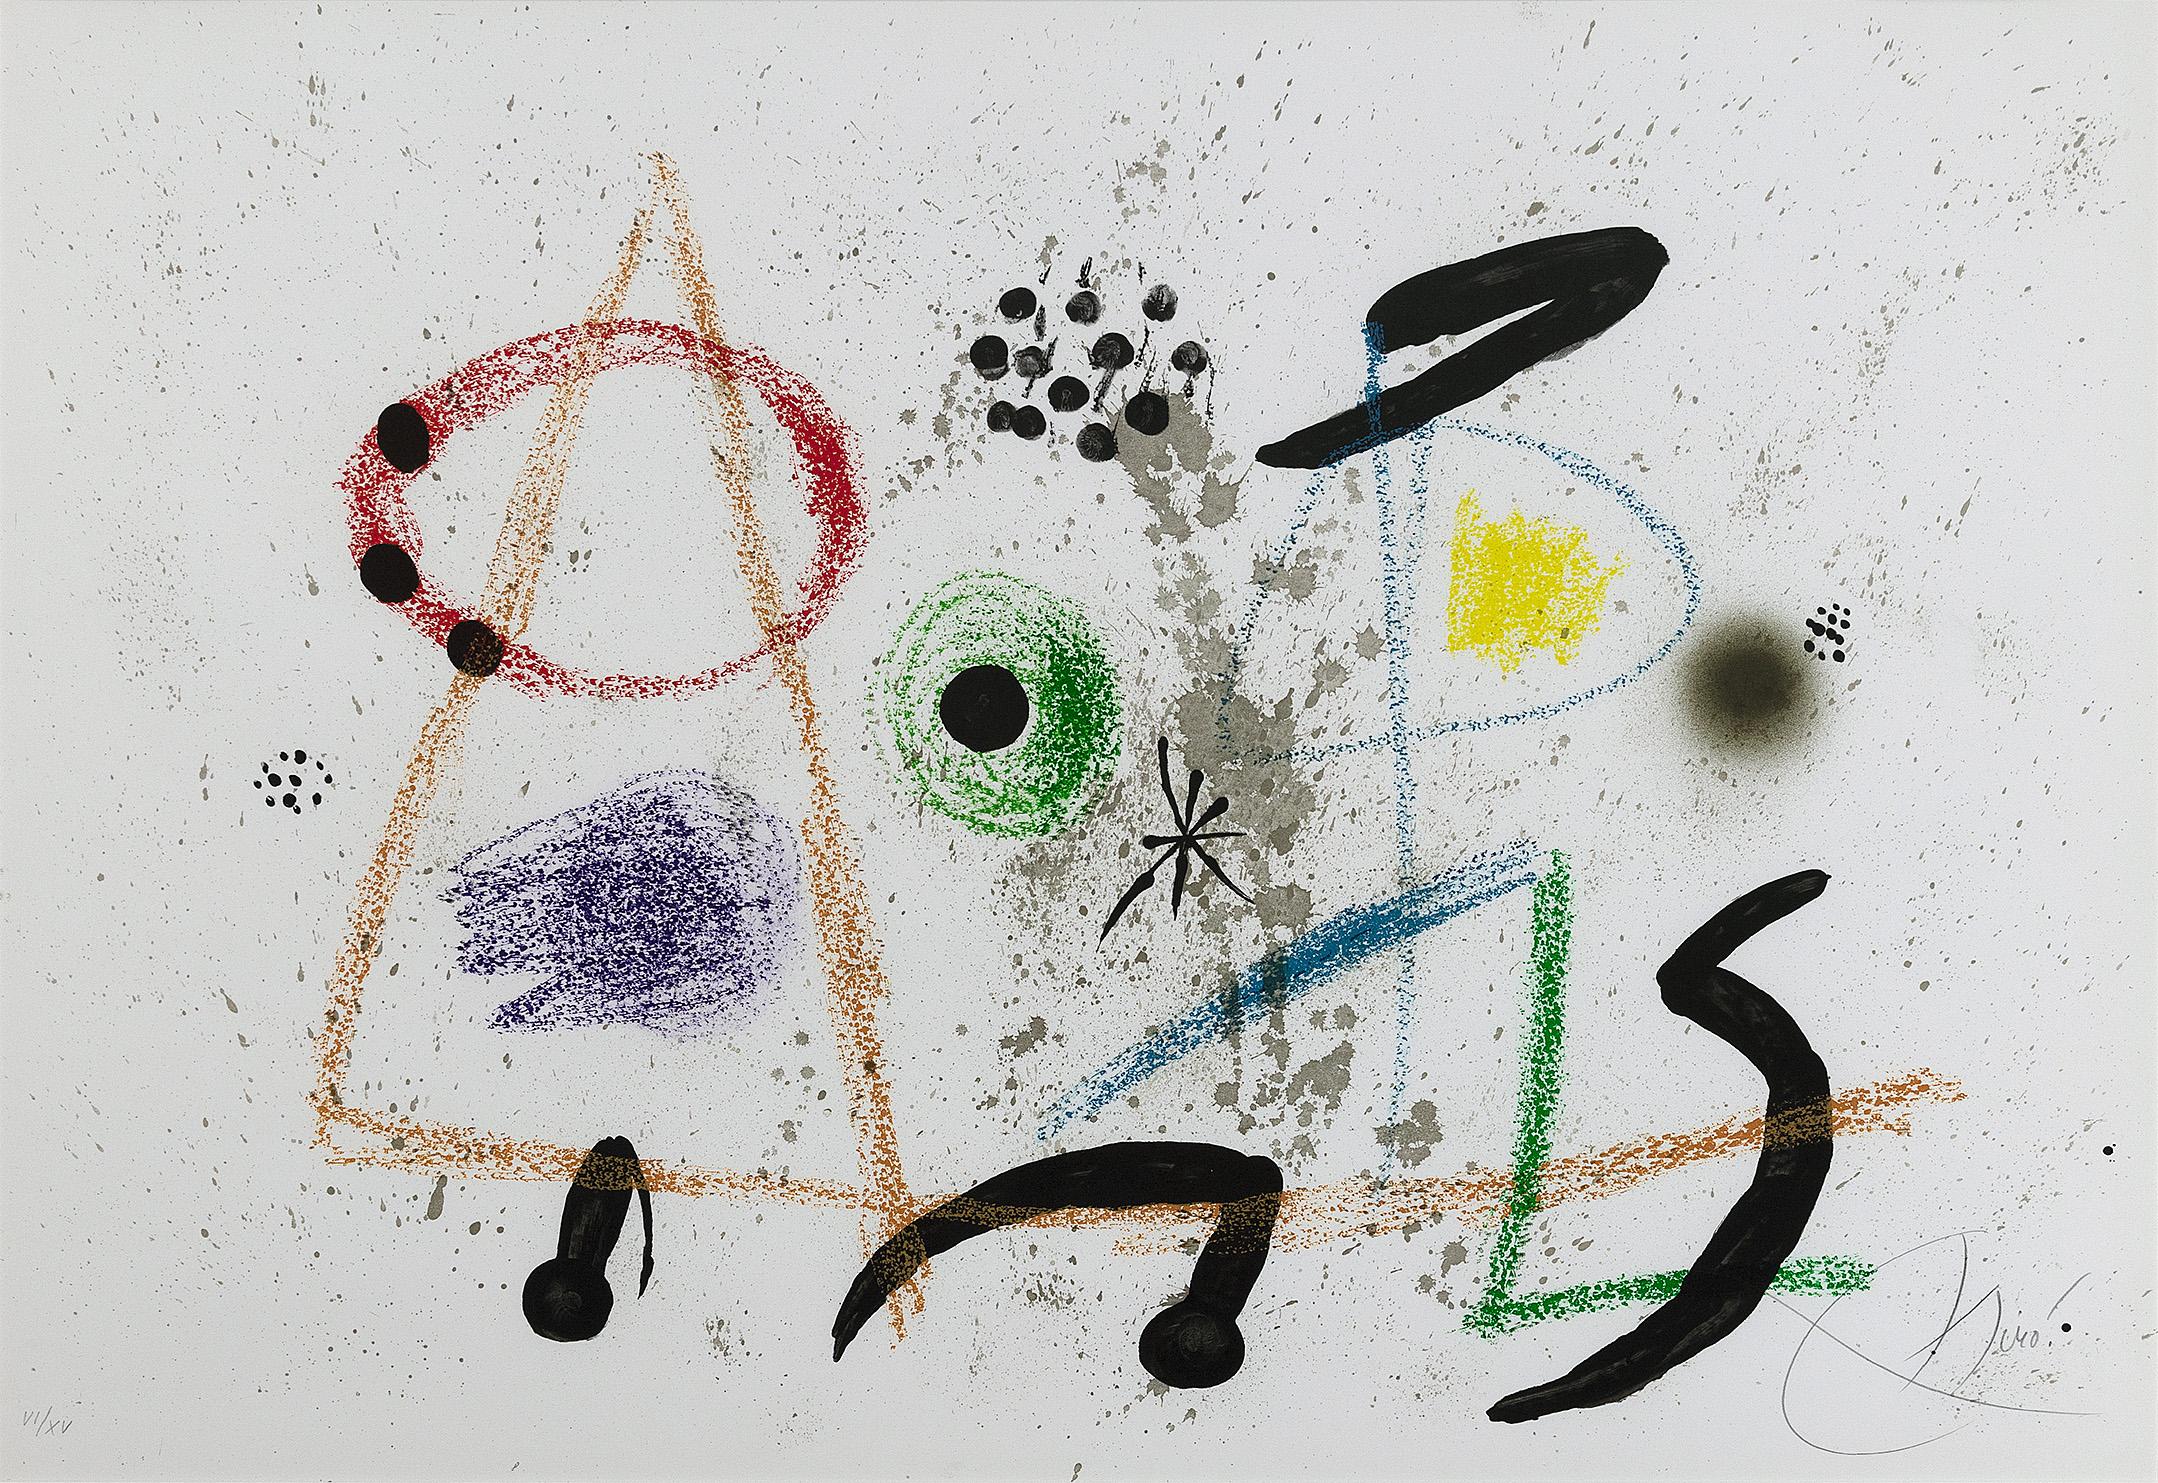 Maravillas con variaciones acrósticas en el jardín de Miró, 1975, (VI/XV) - Print by Joan Miró